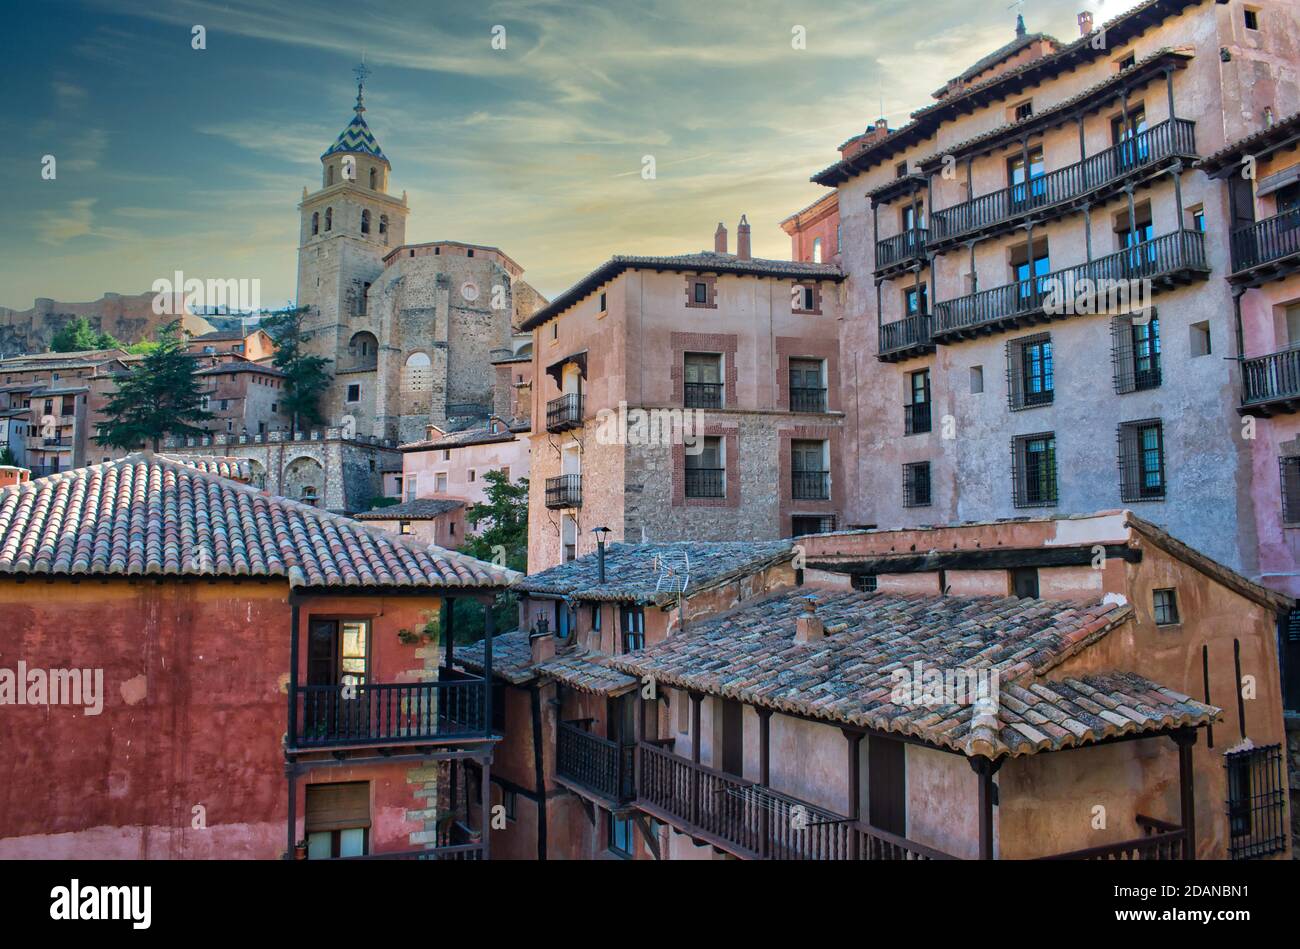 Architecture traditionnelle dans le village d'Albarracin, Teruel et El Salvador cathédrale clocher du XVIe siècle Banque D'Images